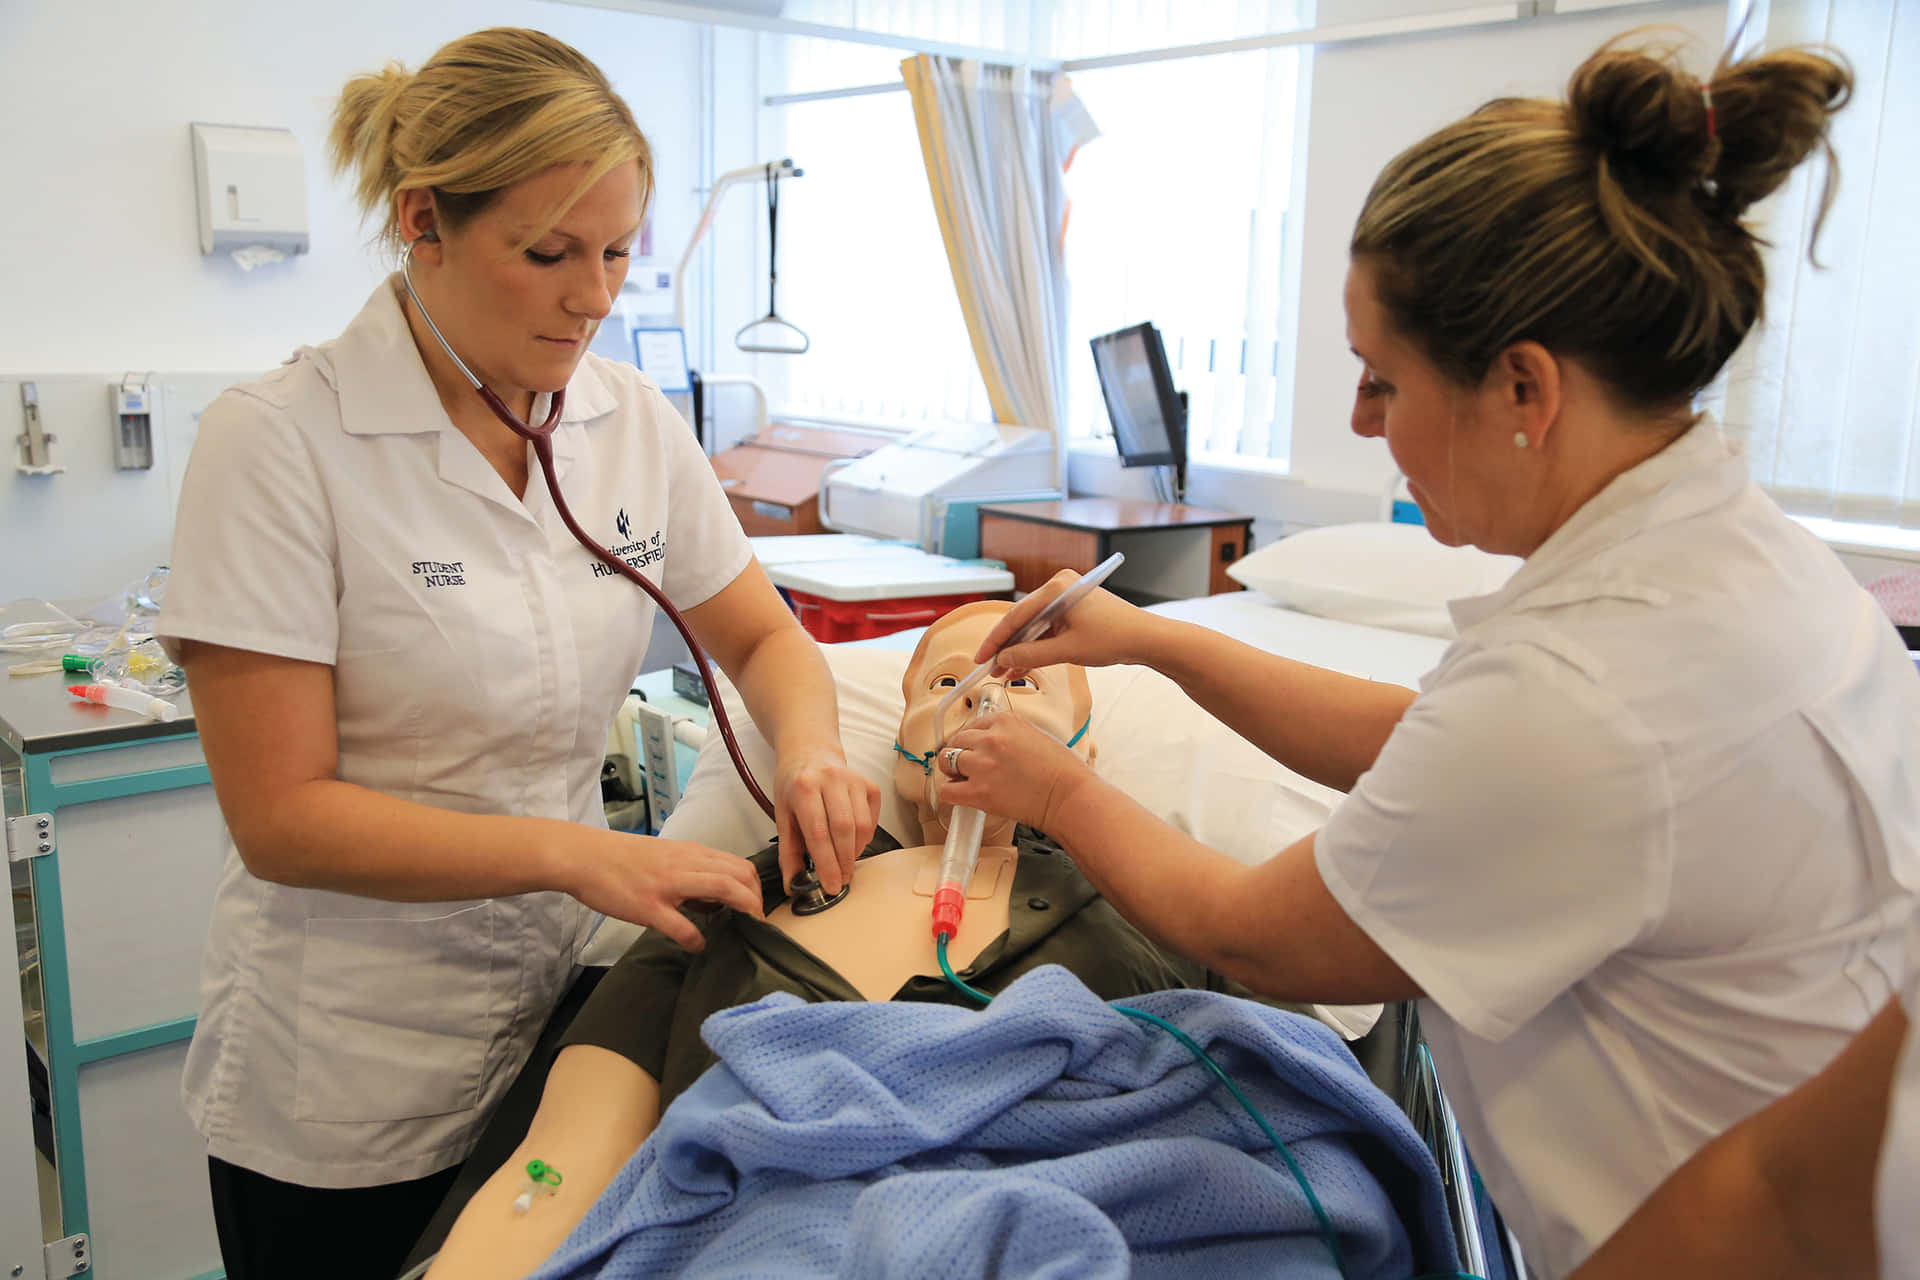 Dueinfermiere Stanno Lavorando Su Un Manichino In Un Ospedale